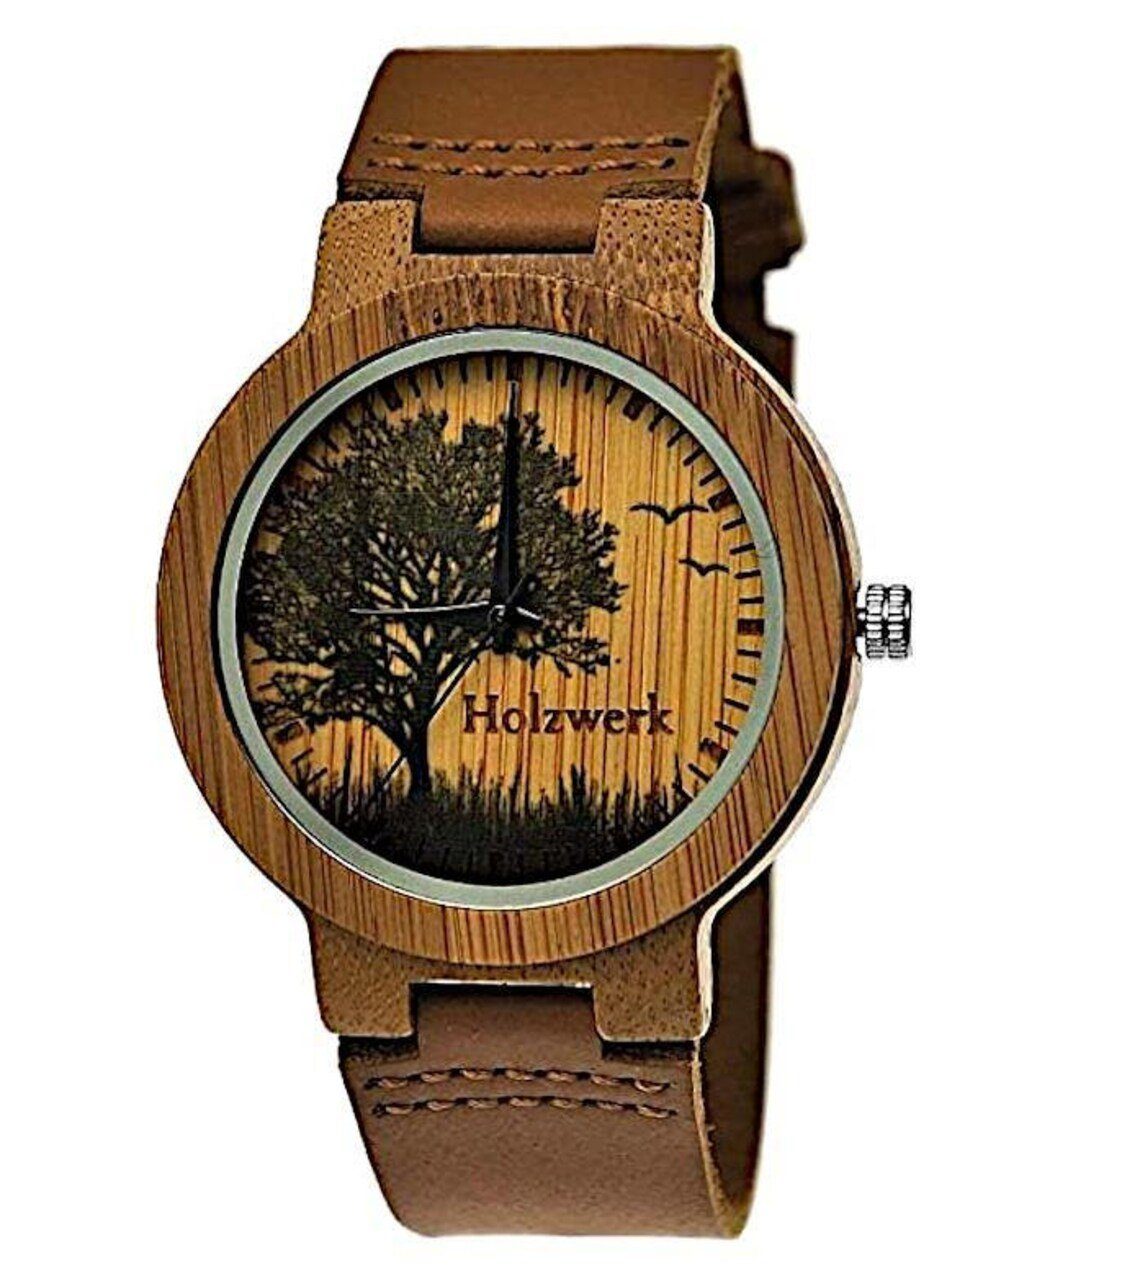 Holzwerk Quarzuhr & Holz Herren Baum Armband braun, FORST mit beige Muster, Uhr Damen